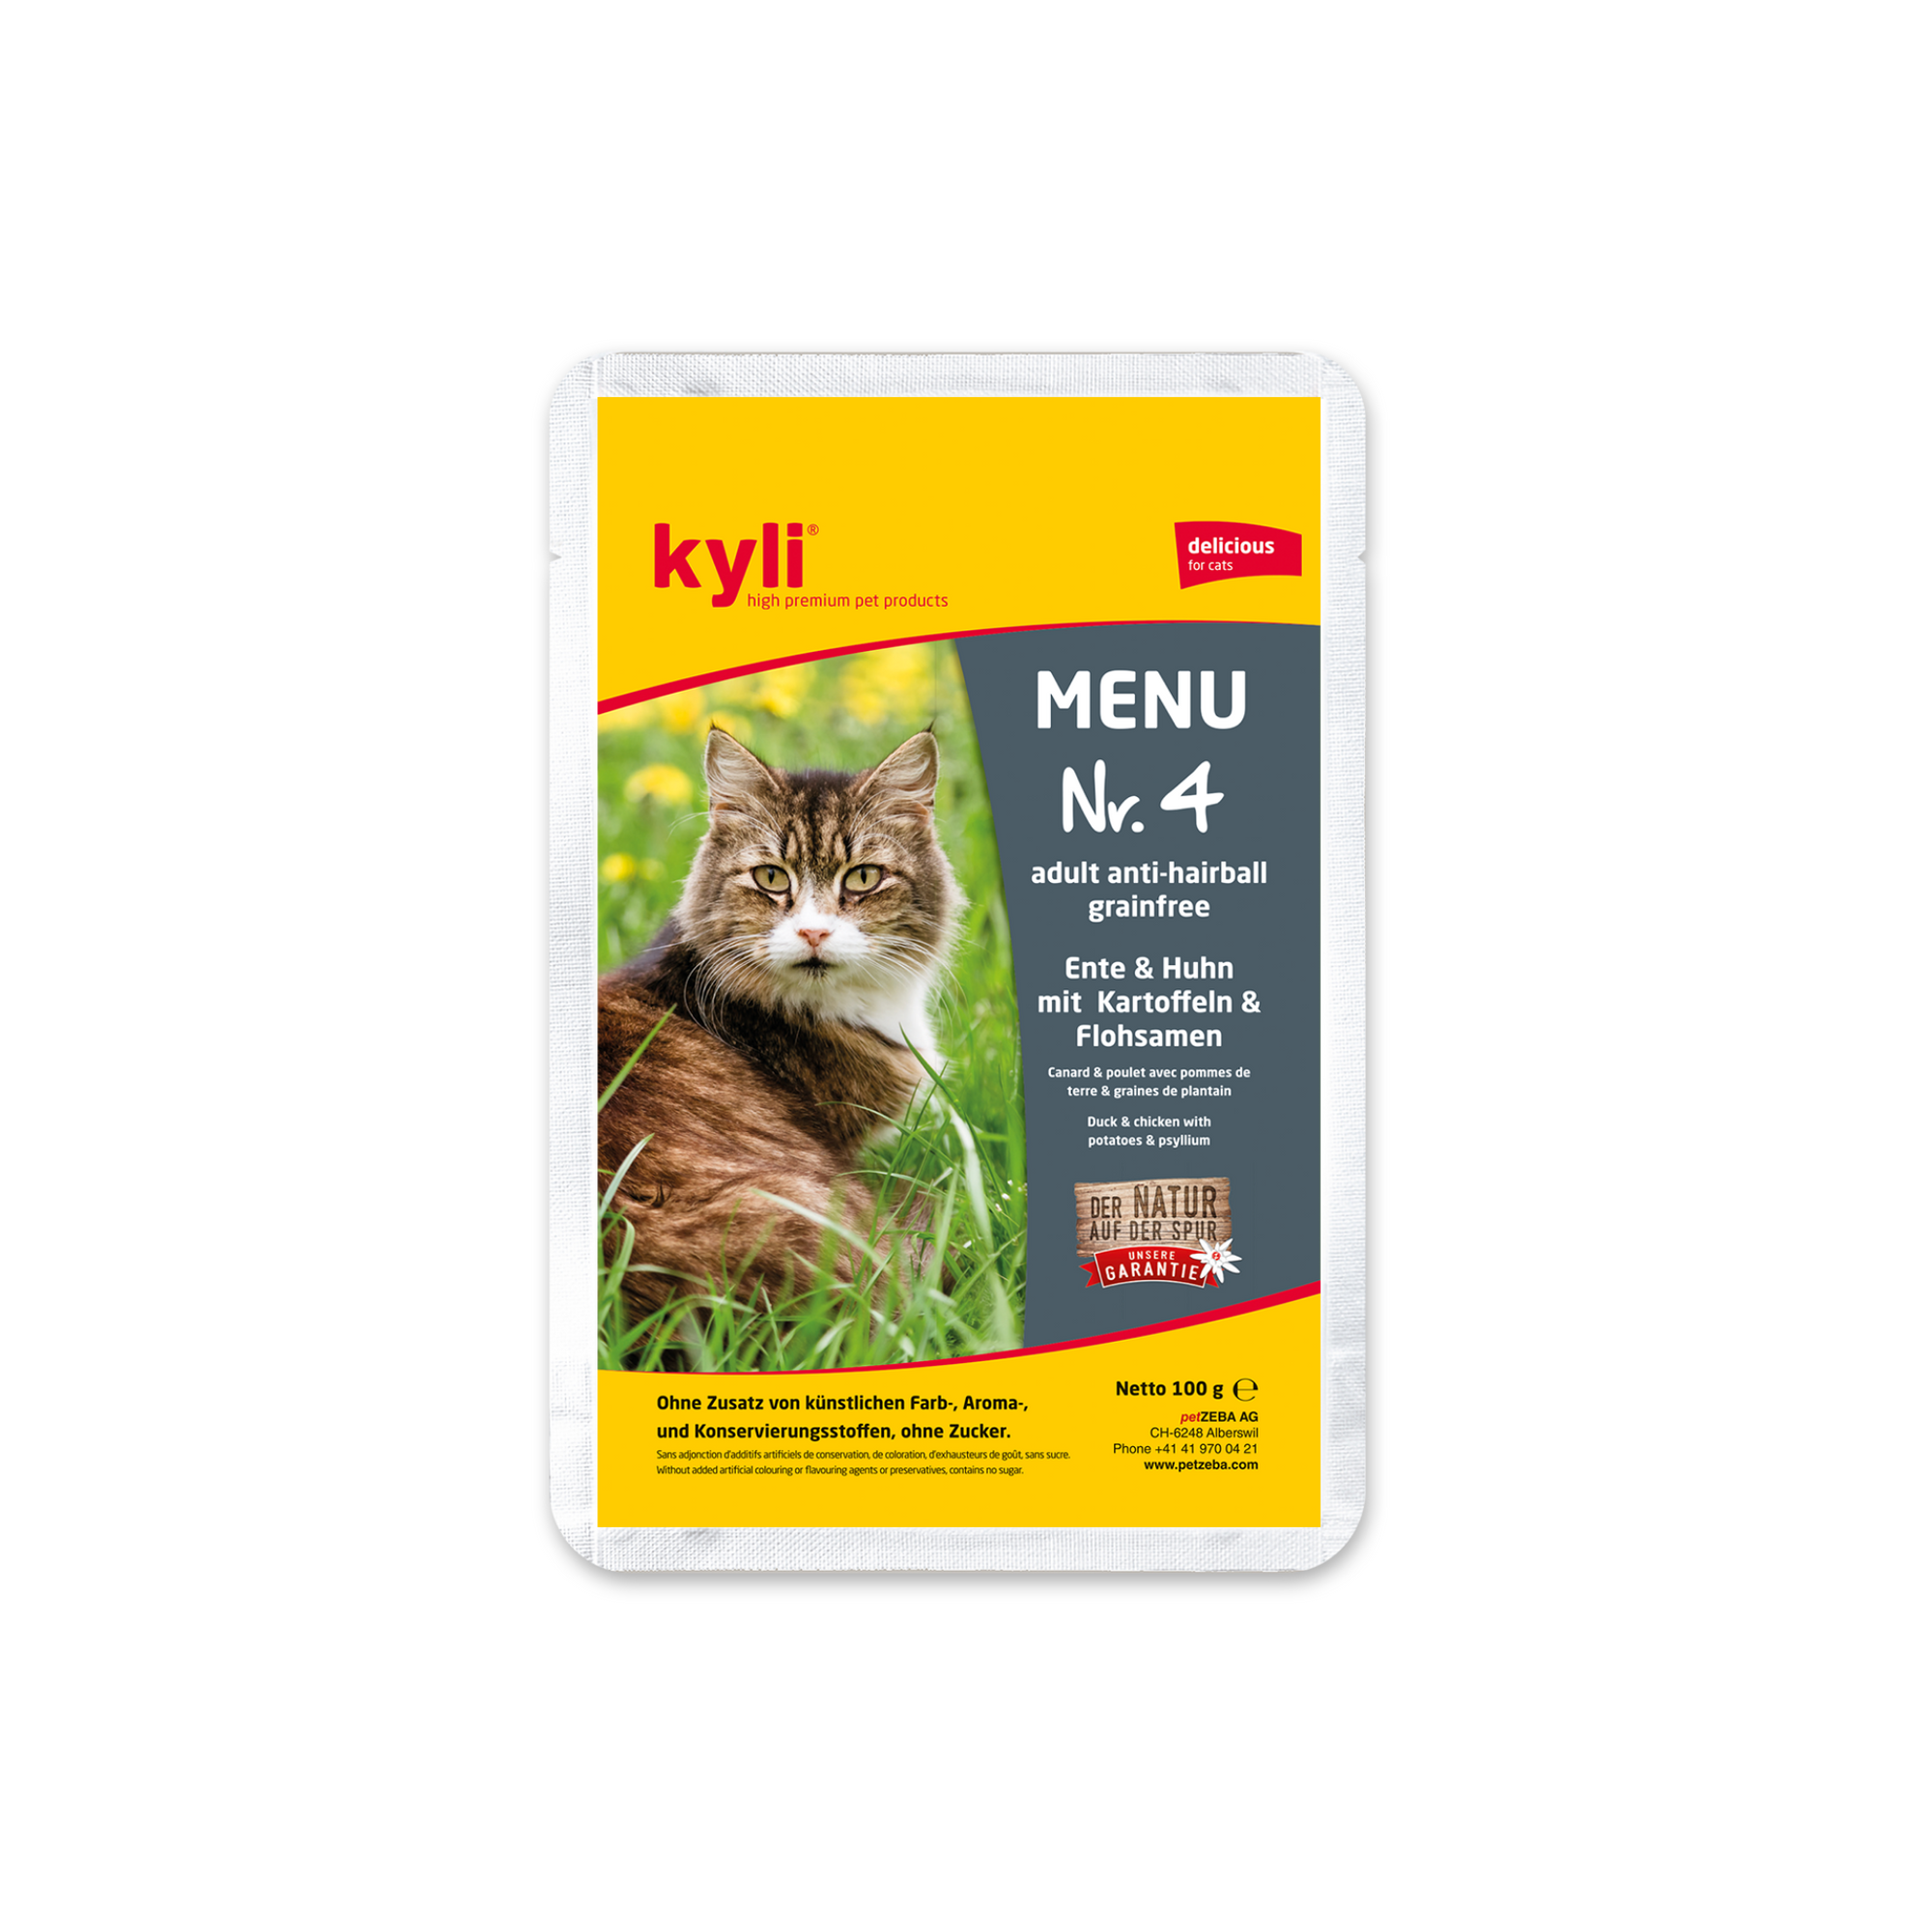 Artikel mit dem Namen Kyli Menu Nr. 4 adult im Shop von zoo.de , dem Onlineshop für nachhaltiges Hundefutter und Katzenfutter.